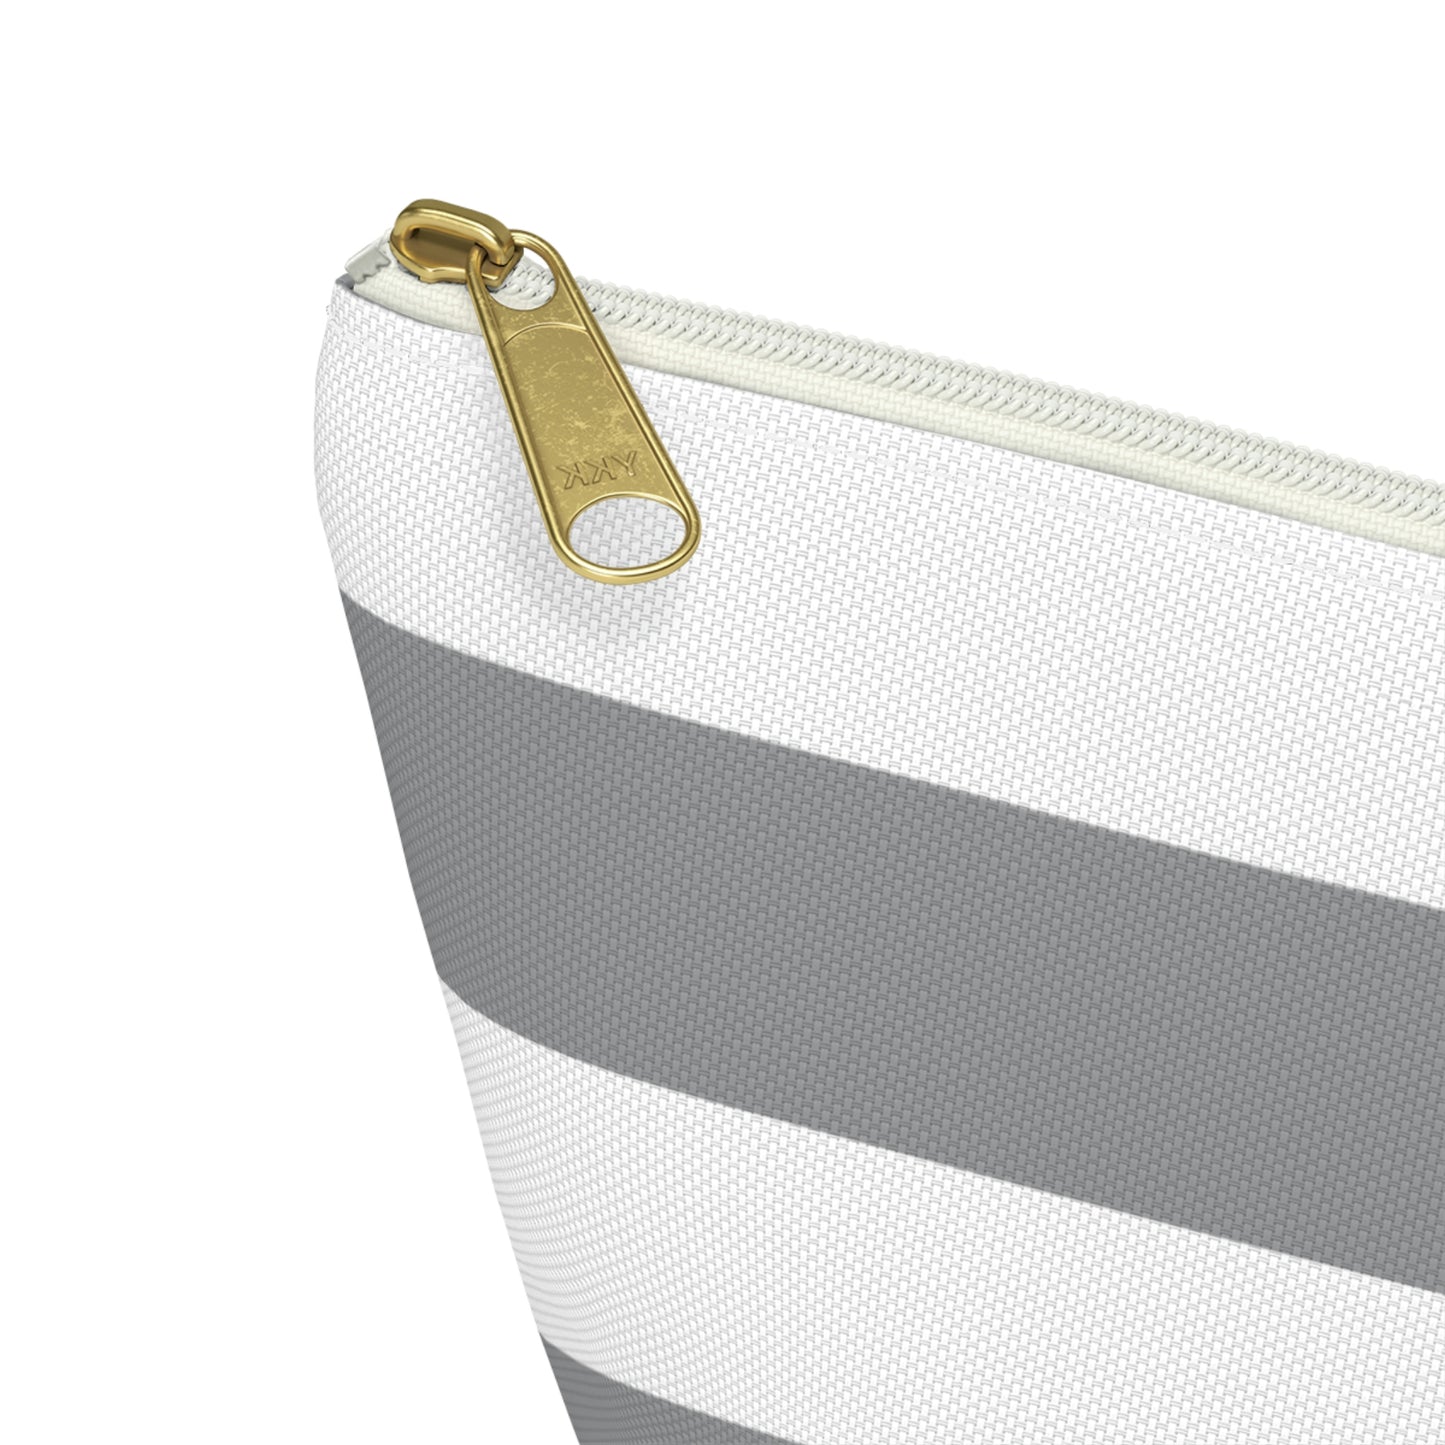 Big Bottom Zipper Pouch - Ash Gray/White Stripes